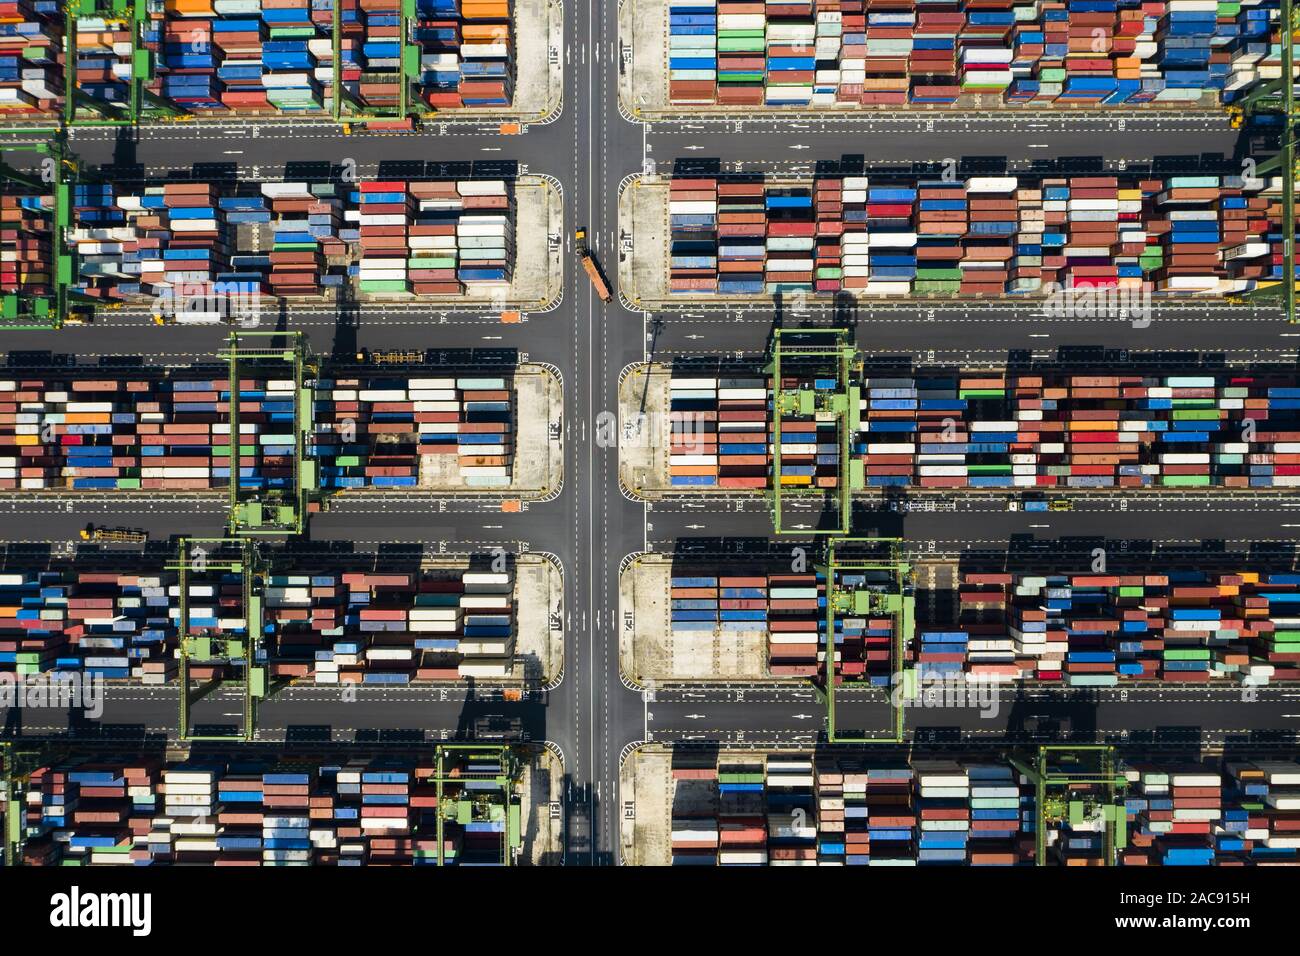 Incredibile vista aerea del porto di Singapore con camion e migliaia di contenitori colorato pronto per il caricamento su alcune navi cargo. Foto Stock